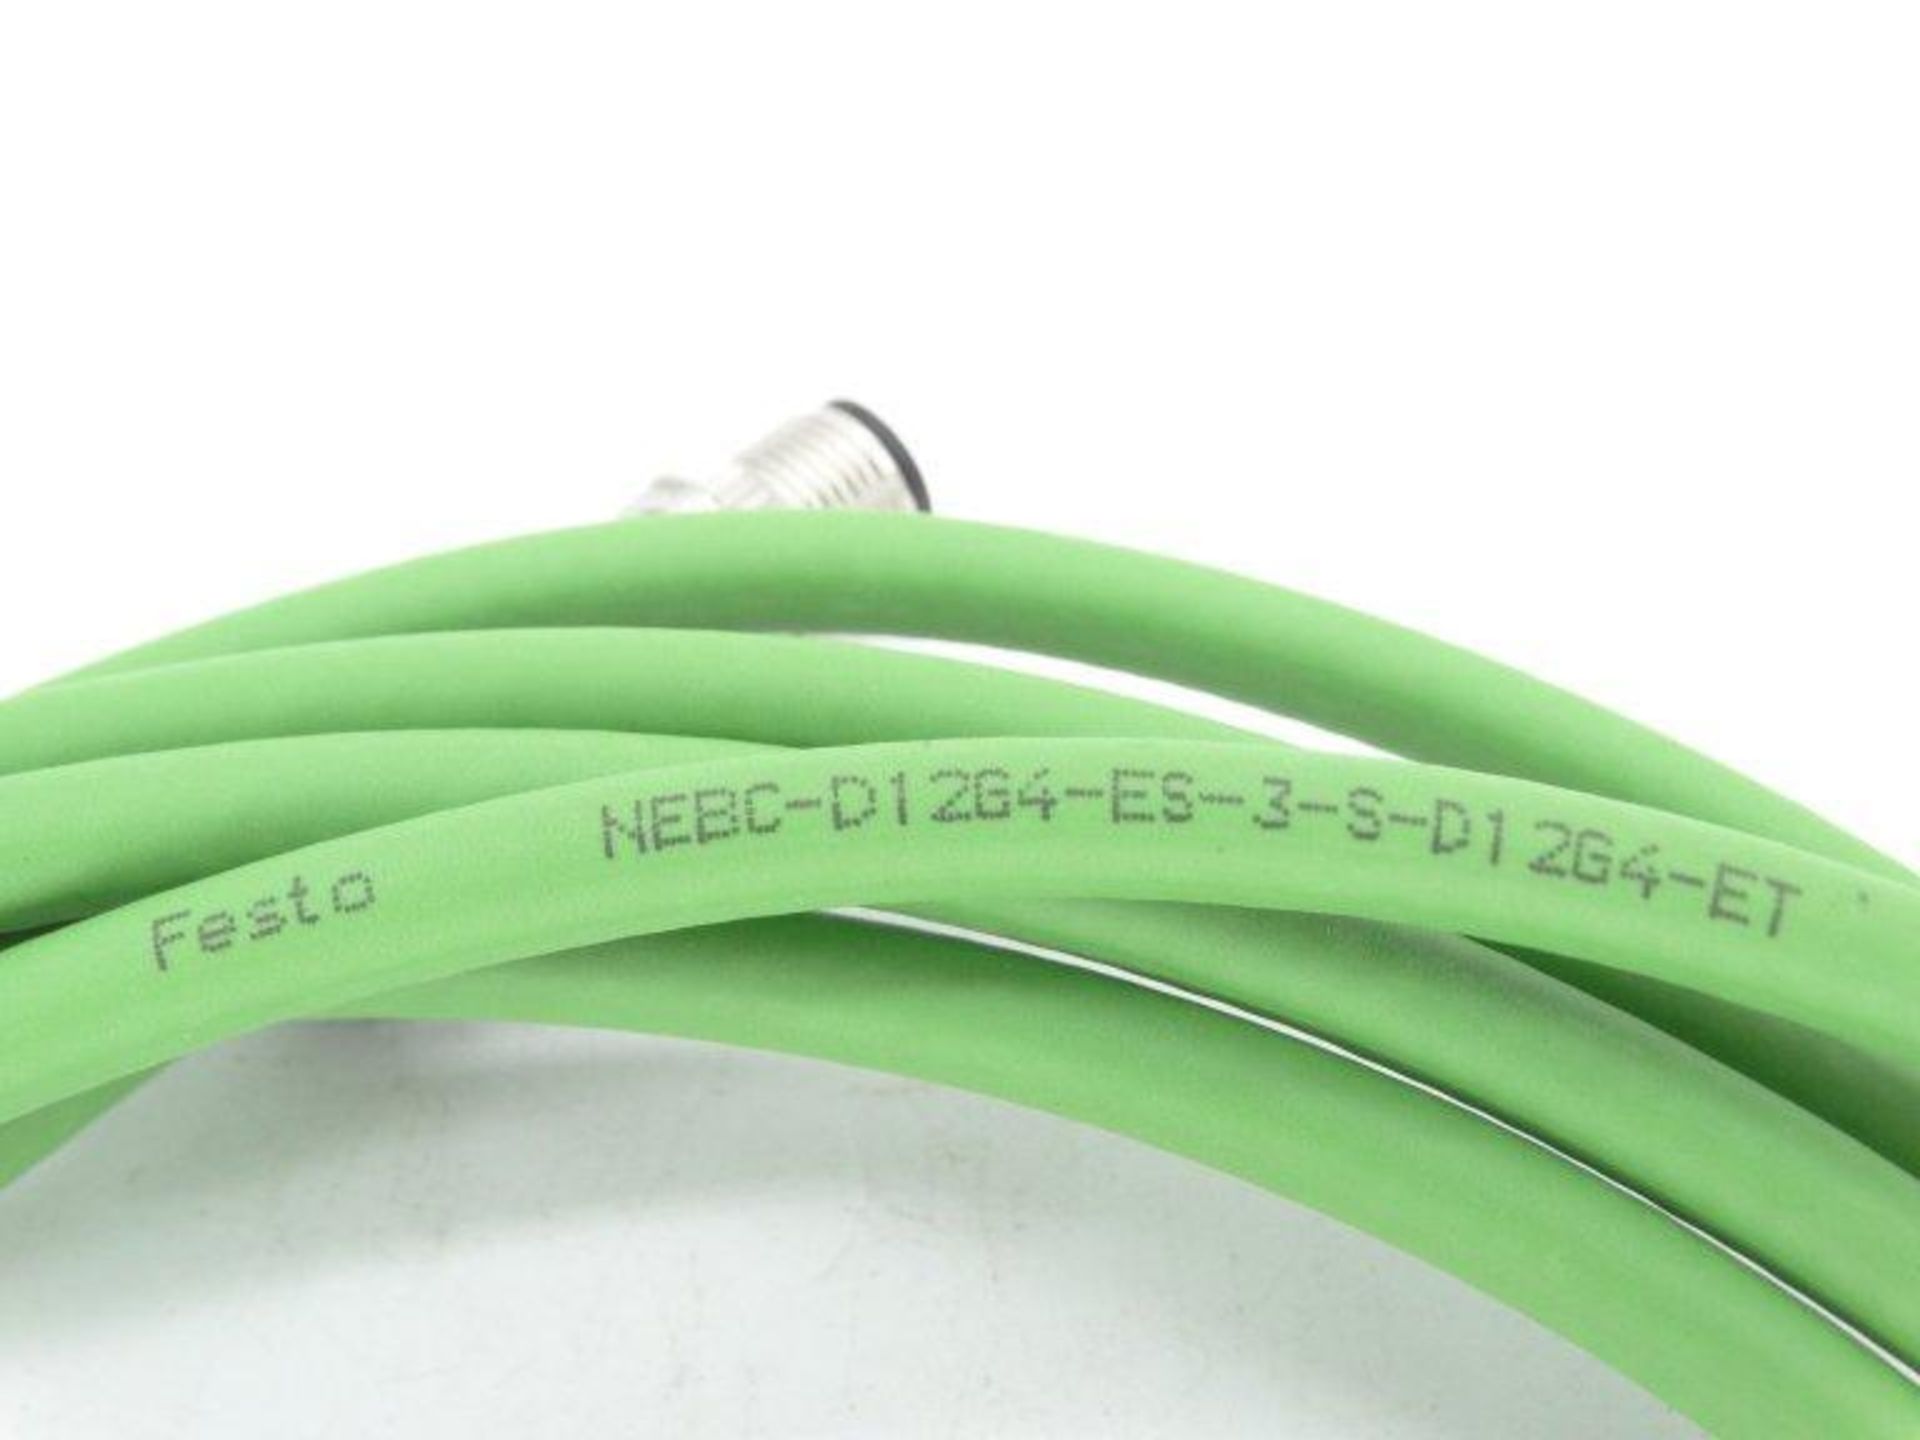 (10) FESTO NEBC-D12G4-ES-3-S-D12G4-ET Cable - Image 3 of 3